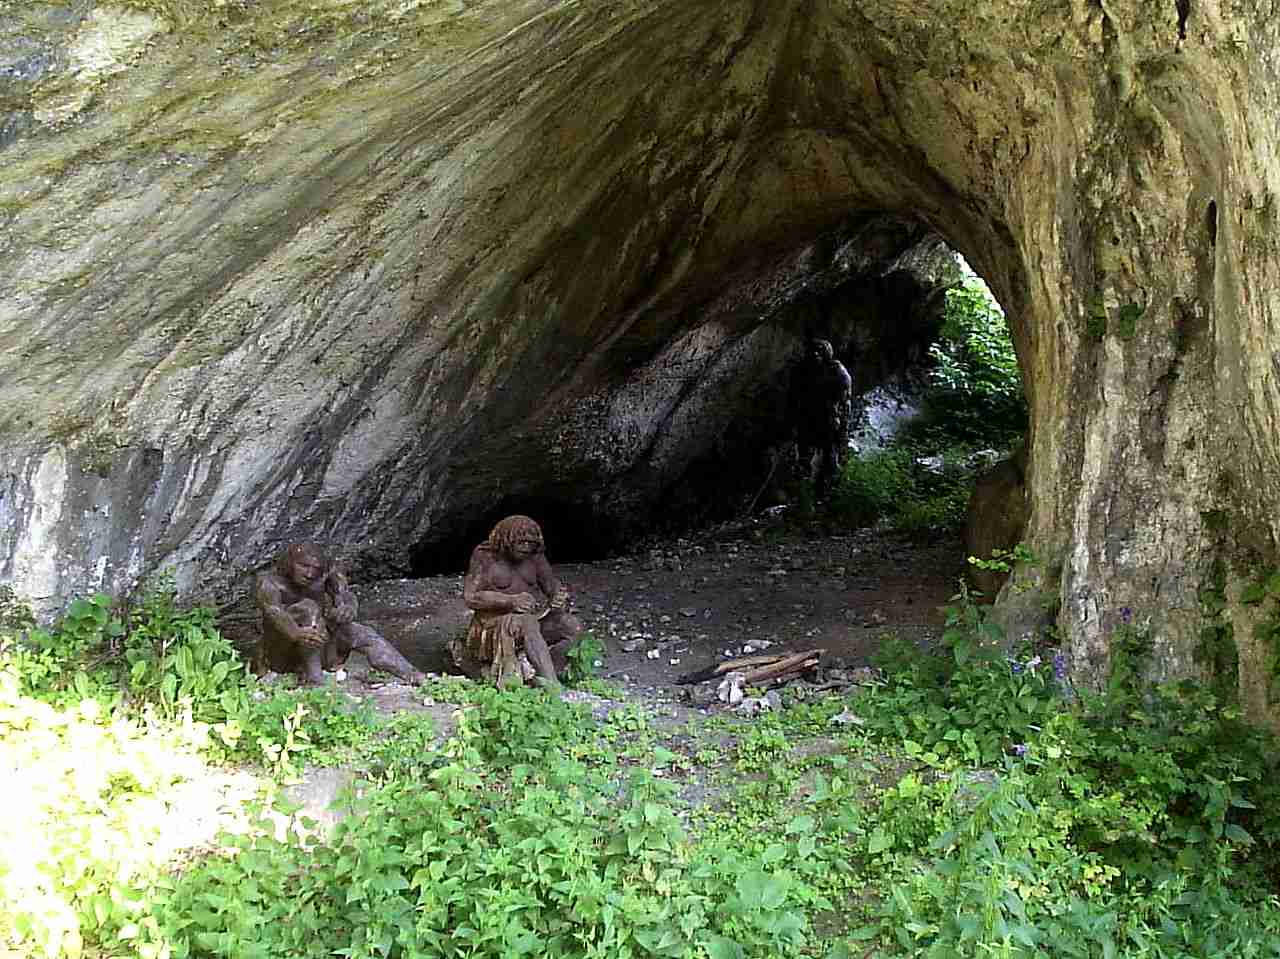 Jaskinia Ciemna (Dark Cave), Ojcowski National Park, Poland